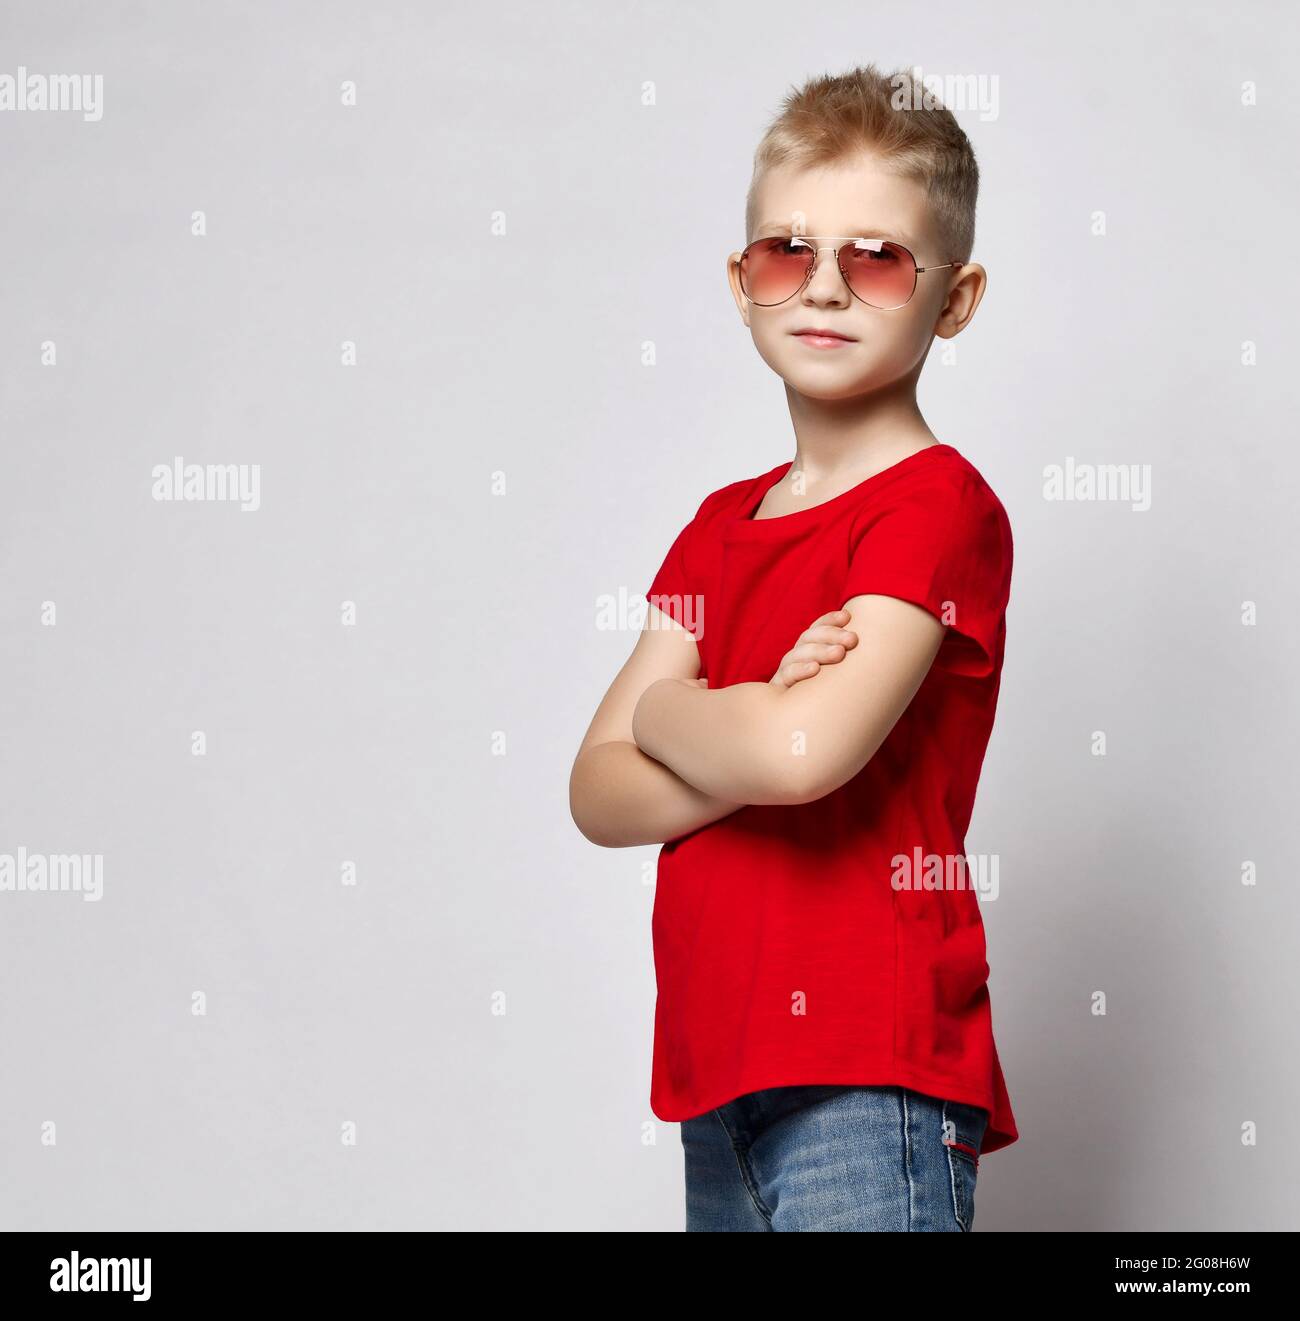 Niño Feliz En Camiseta Roja Con Las Manos Arriba Aislados Fotos, retratos,  imágenes y fotografía de archivo libres de derecho. Image 28368876